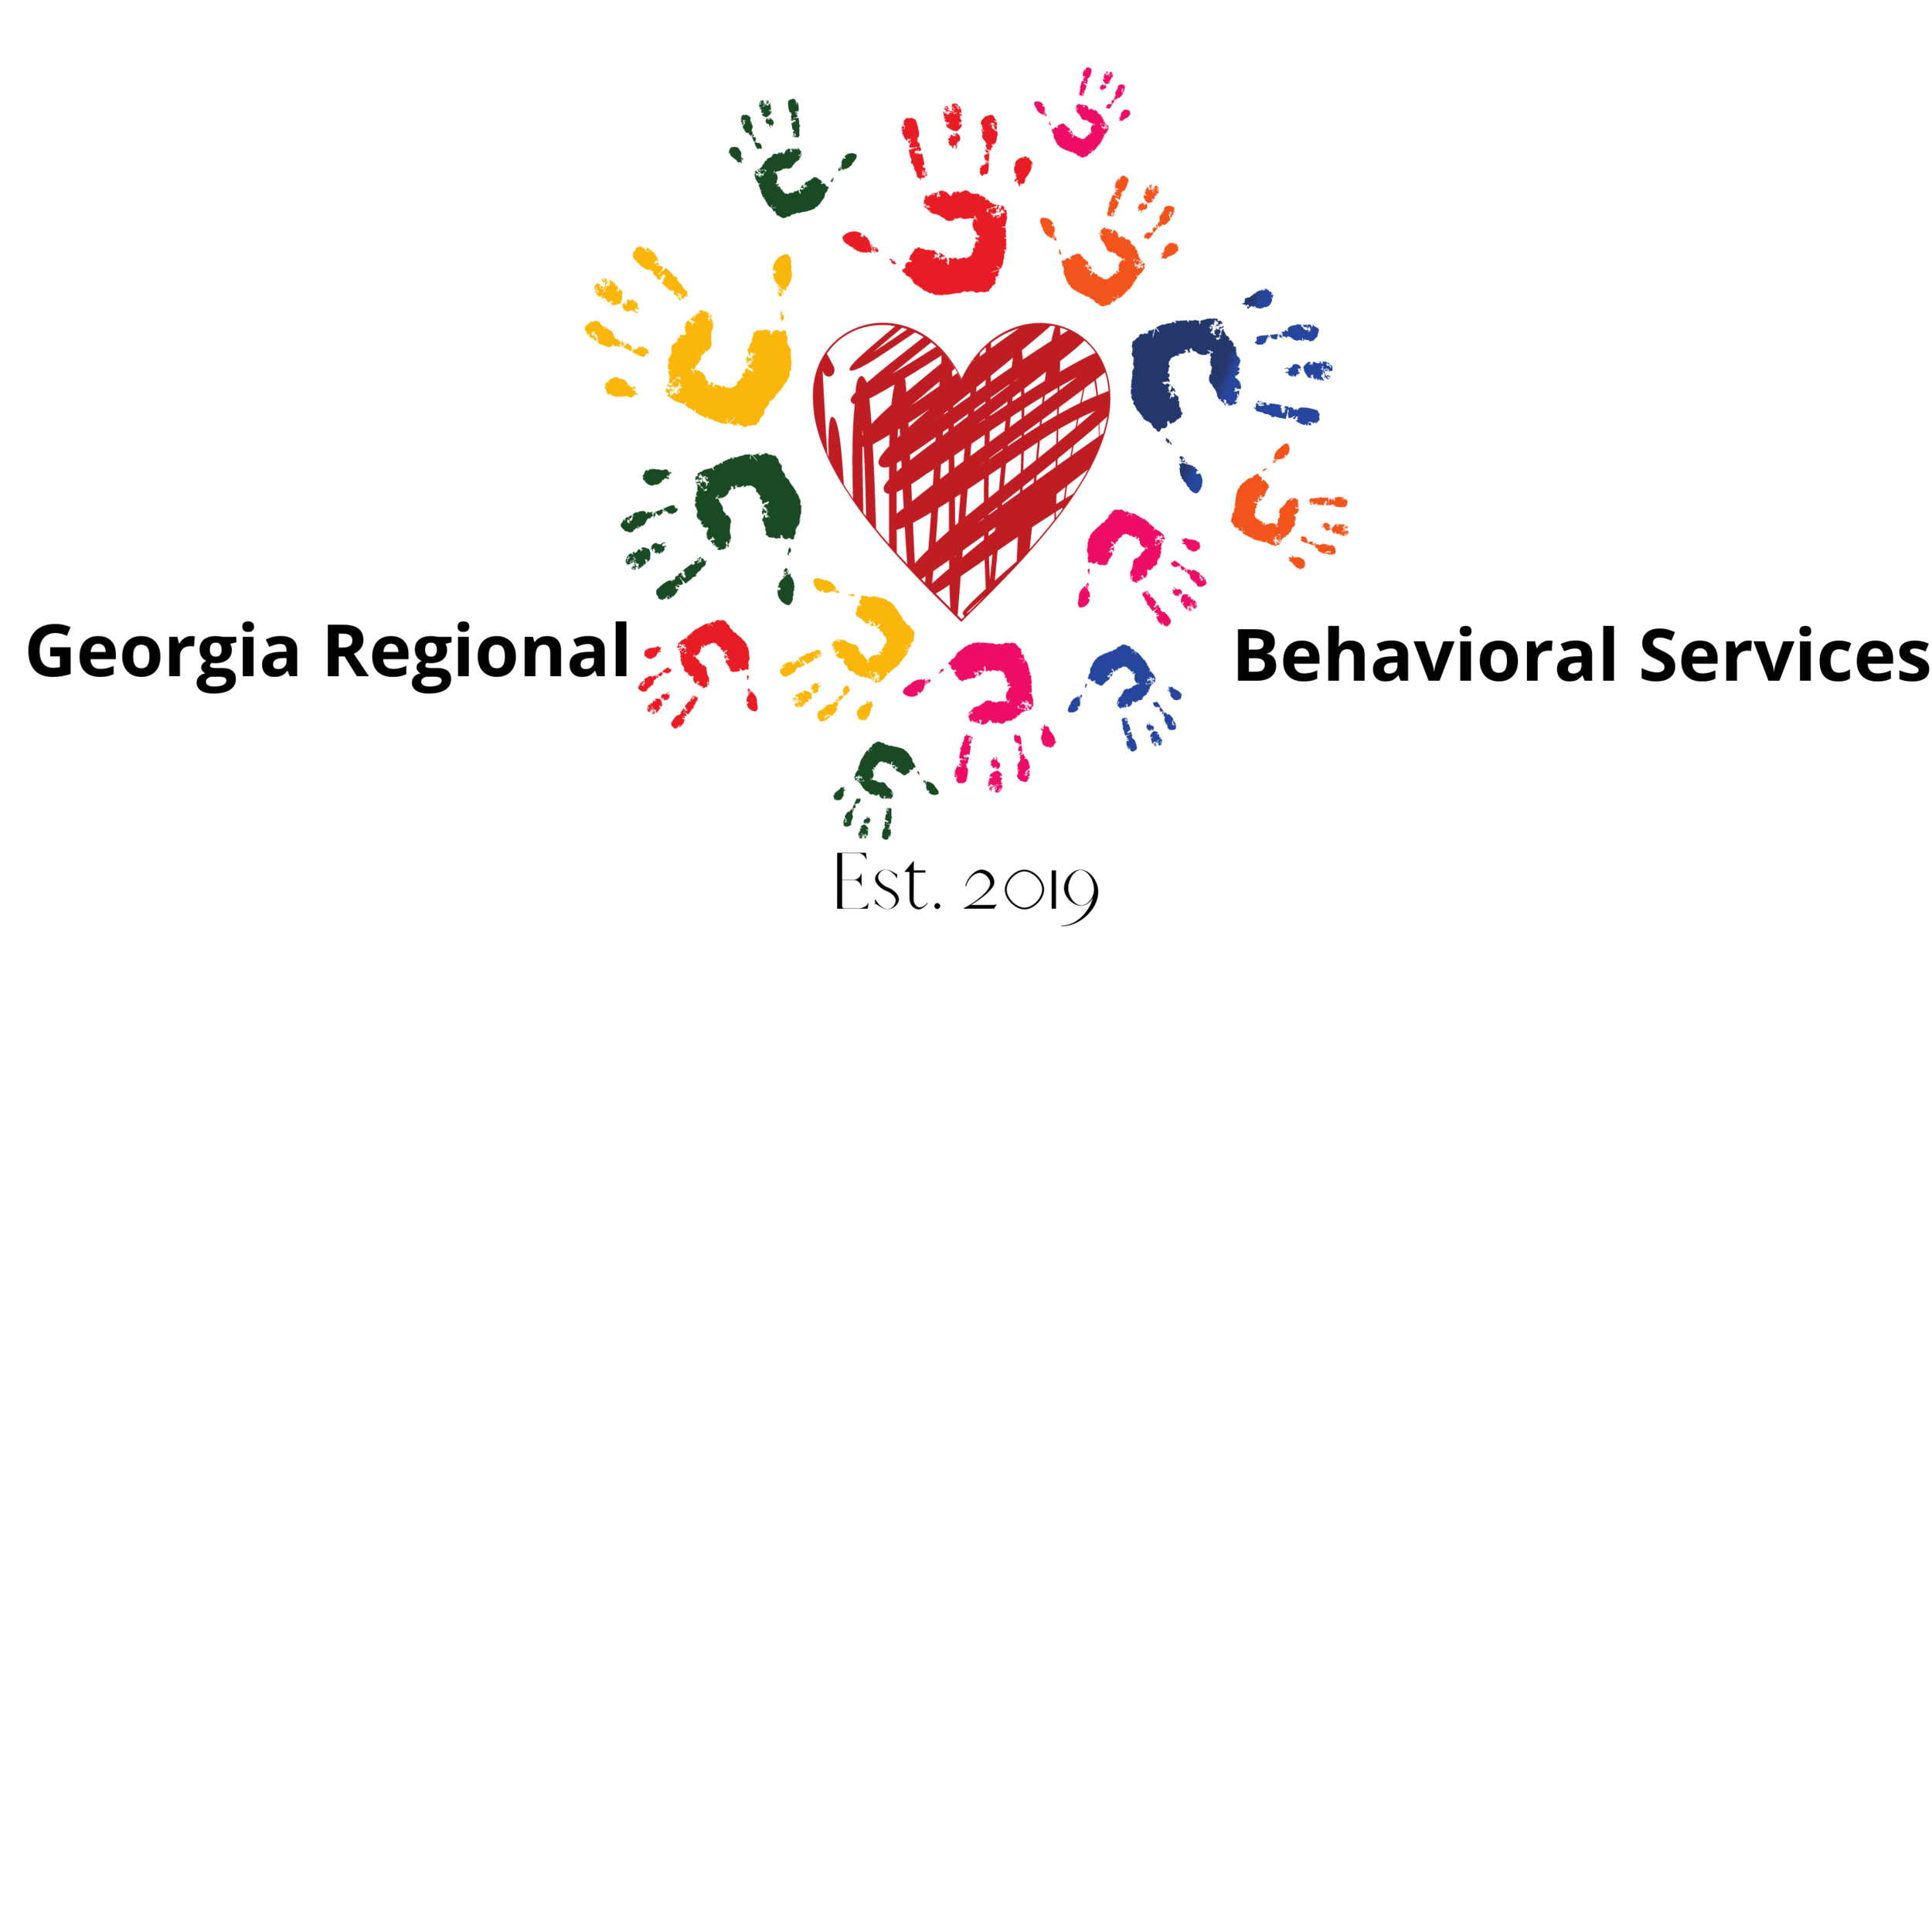 Georgia Regional Behavioral Services